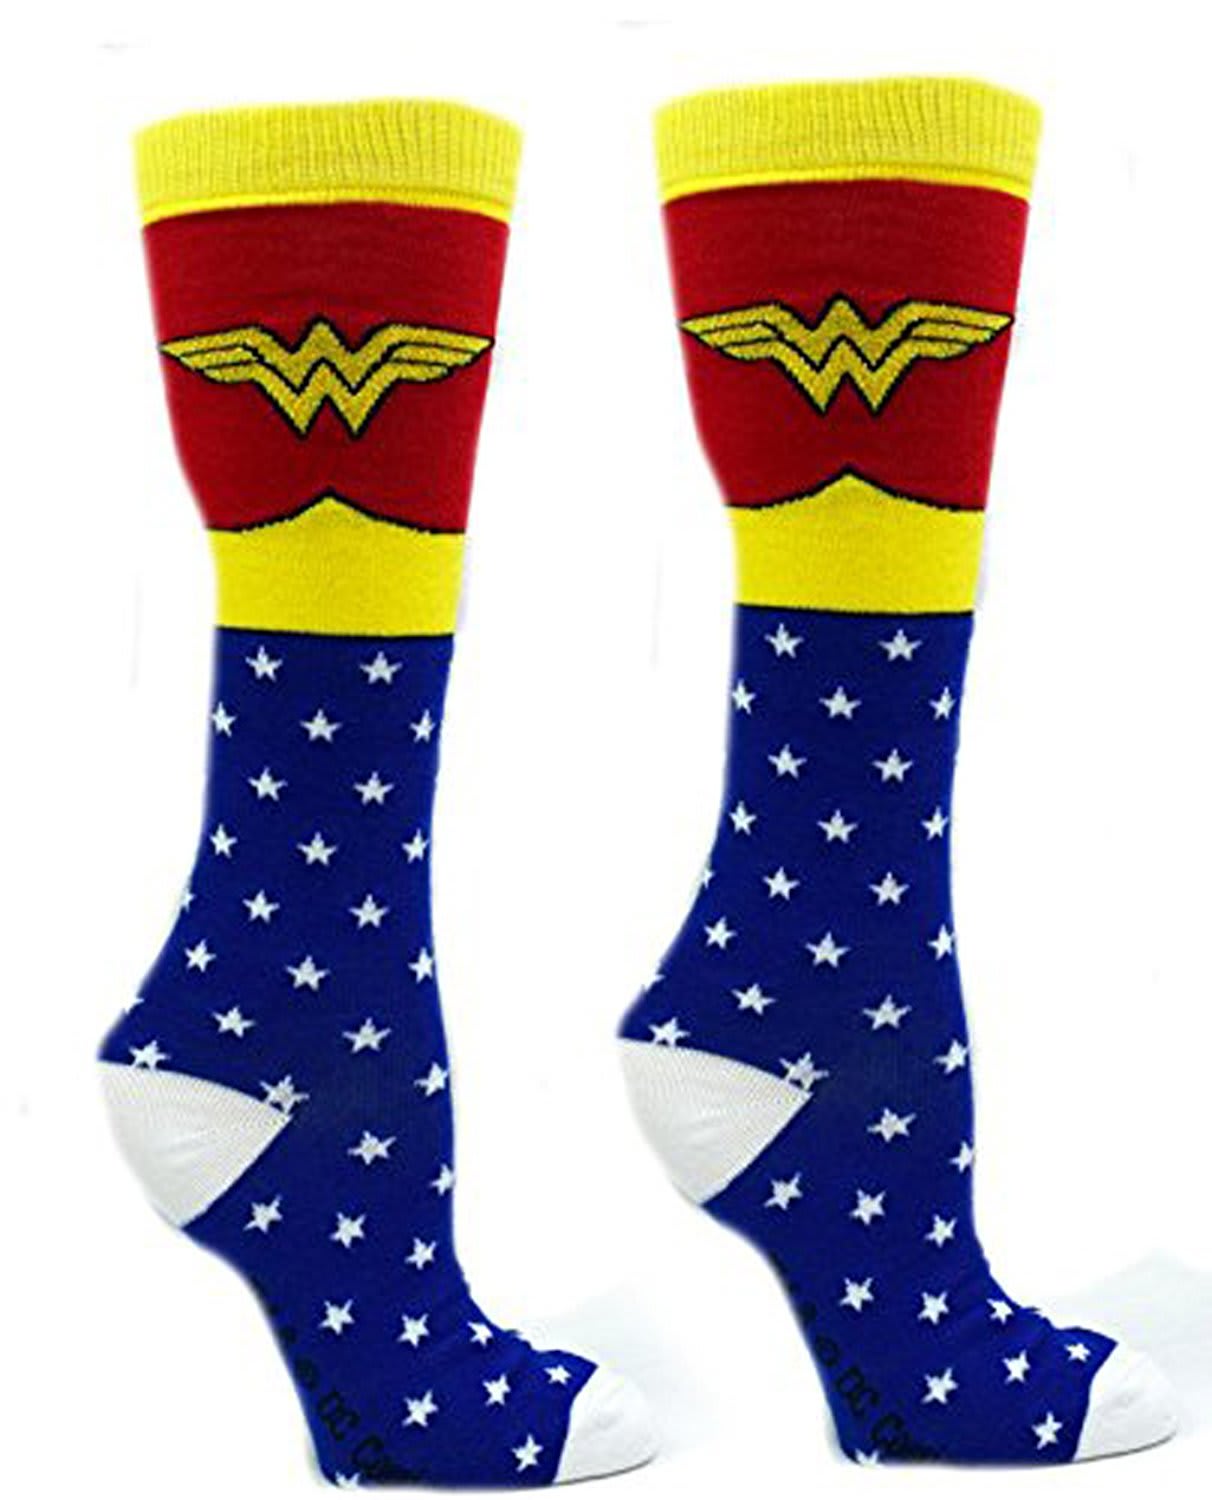 Wonder Woman socks